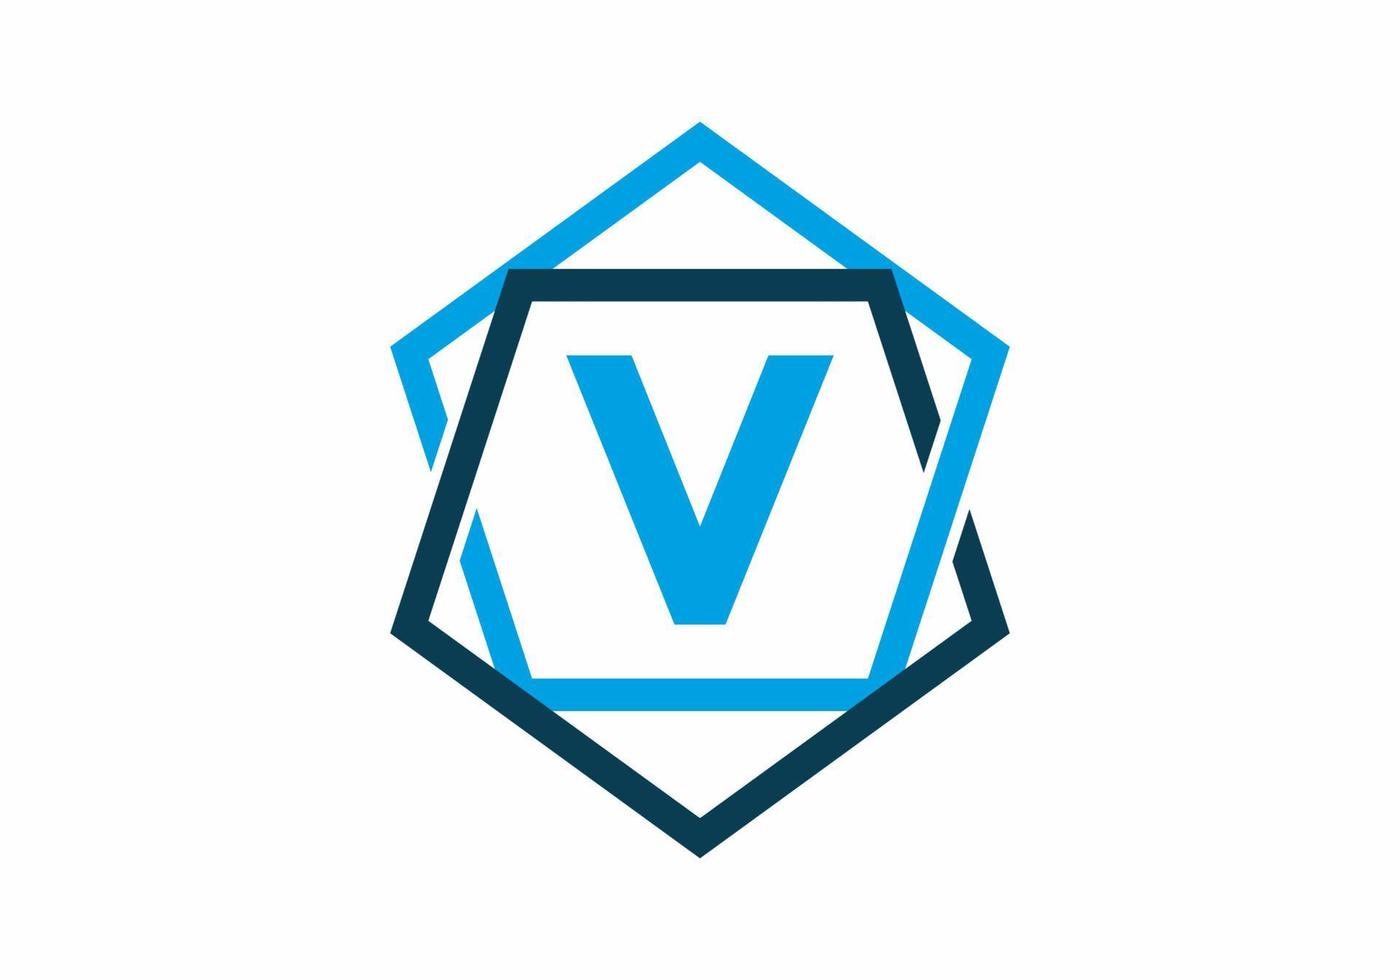 blauwe kleur van de eerste letter v in vijfhoekkader vector